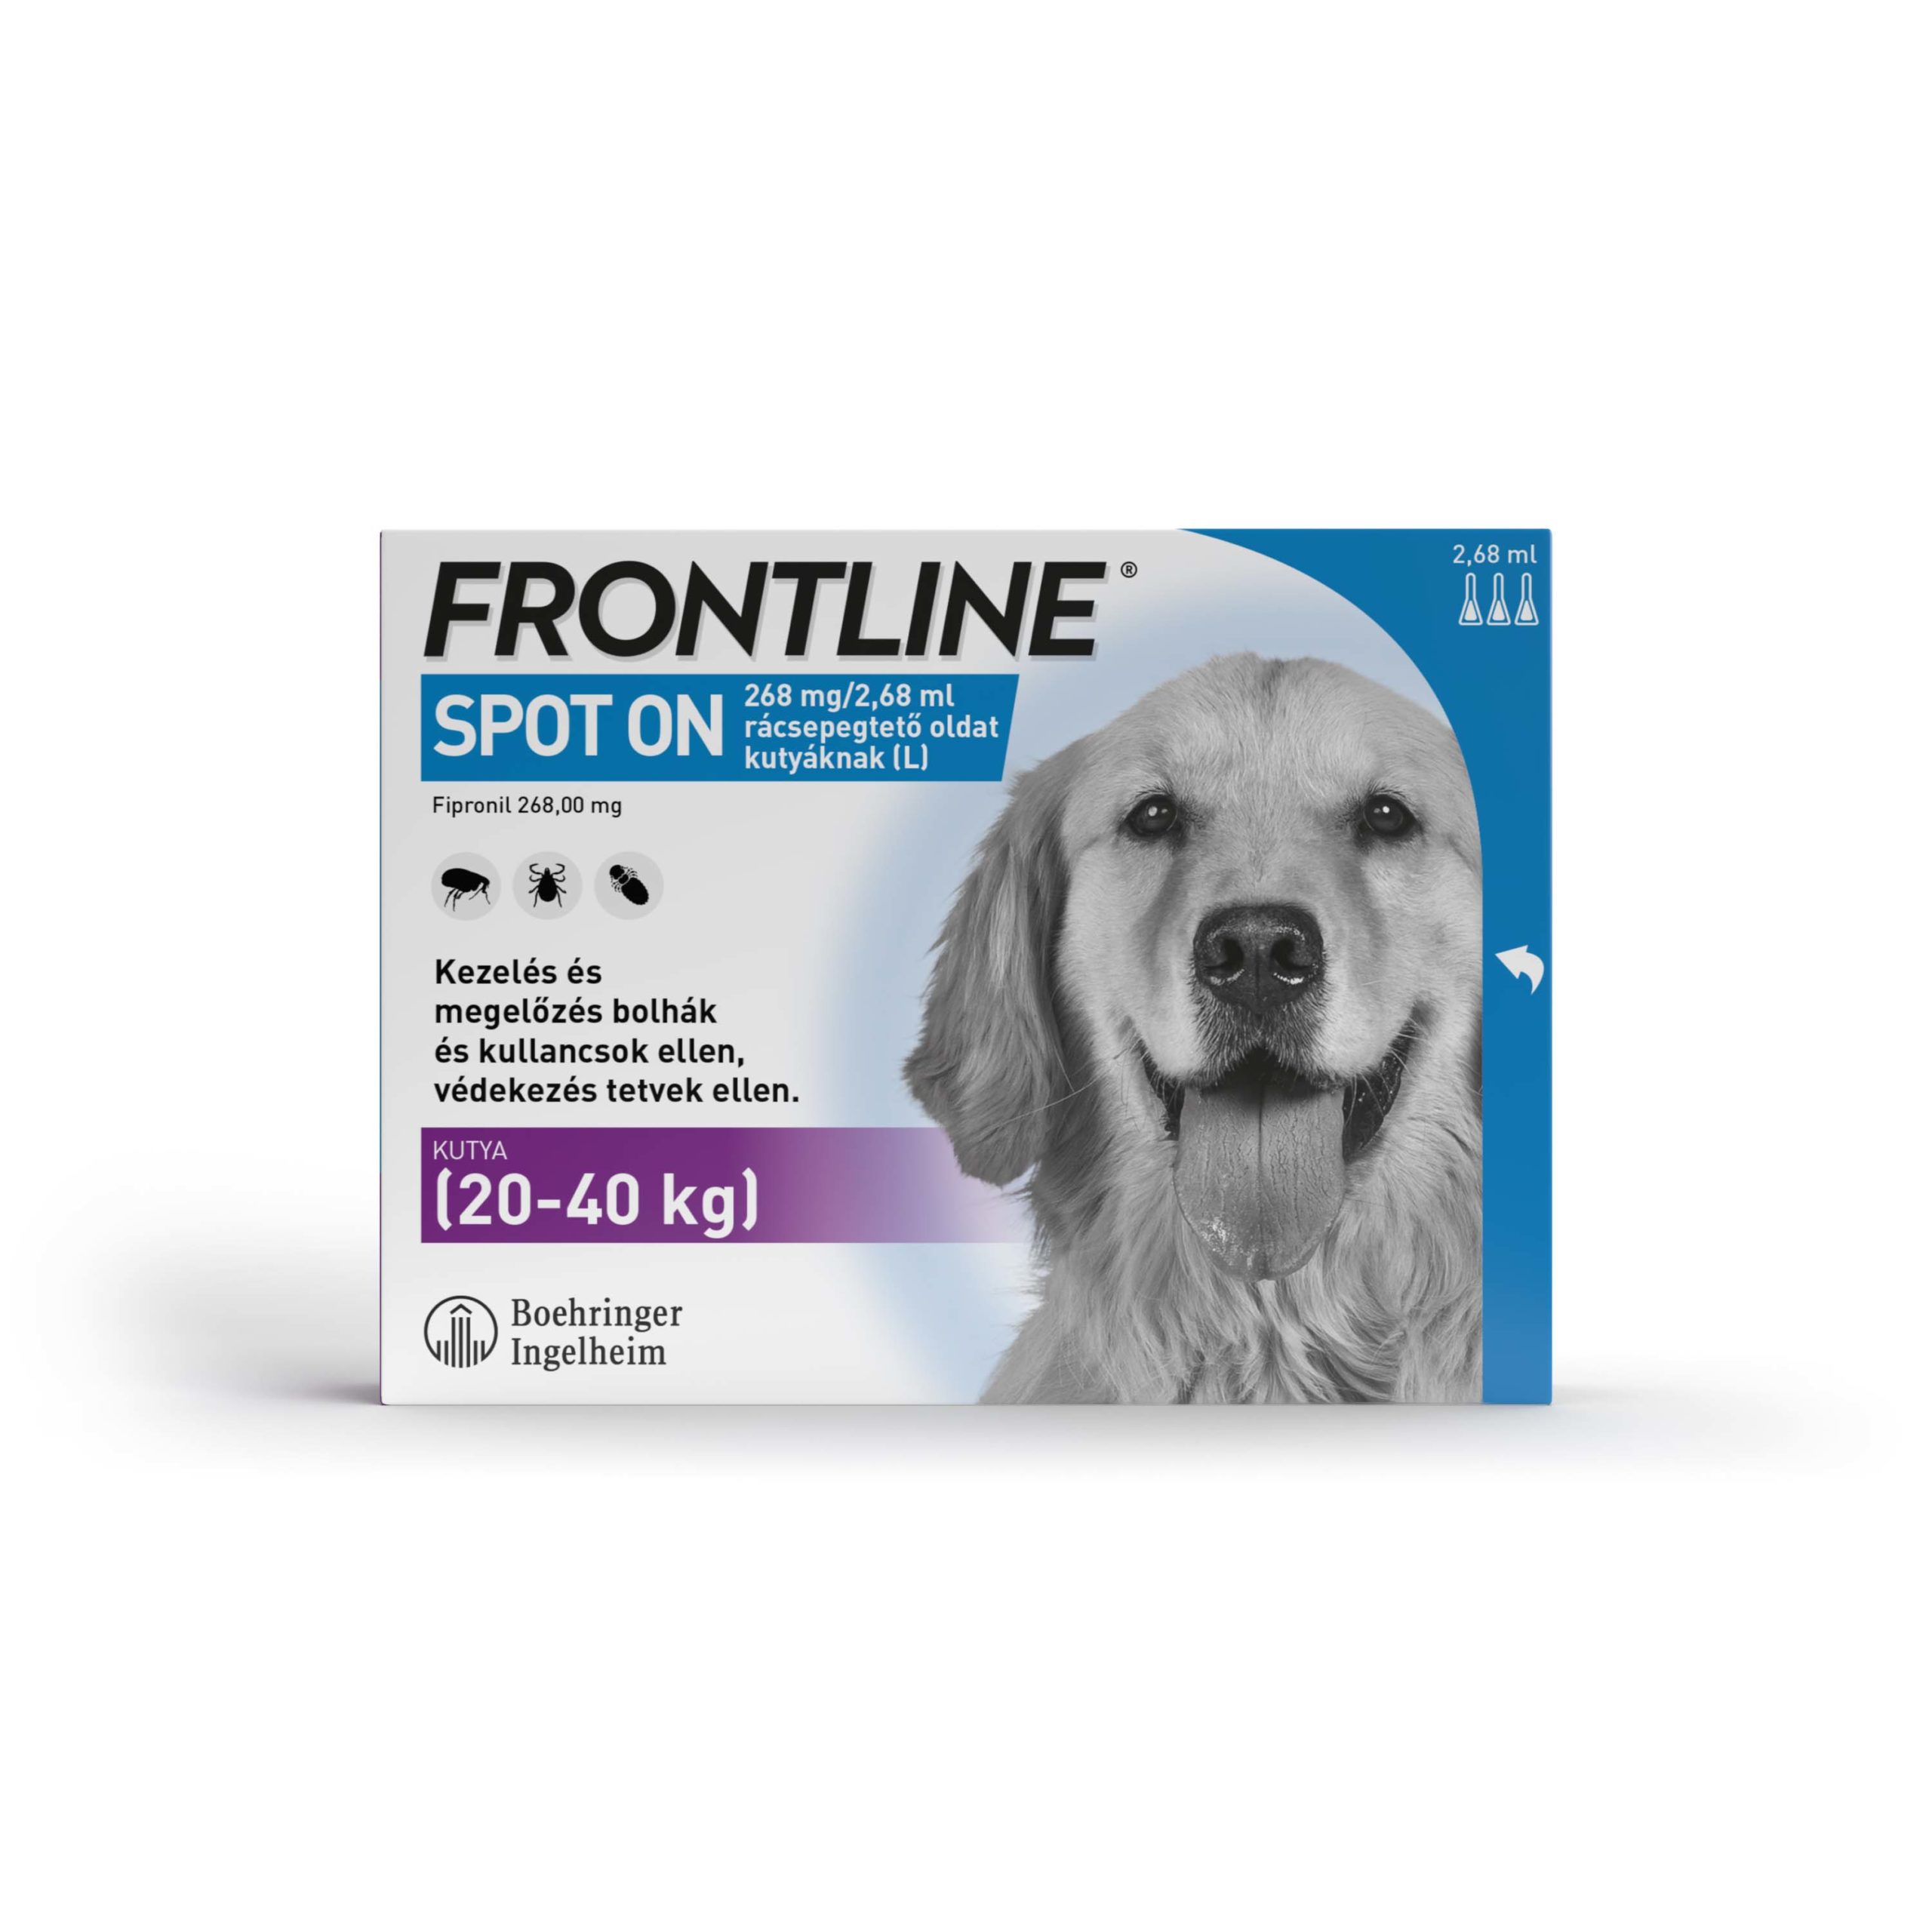 Frontline spot-on kullancs, bolha és tetvek ellen kutyáknak L 20-40kg 3db